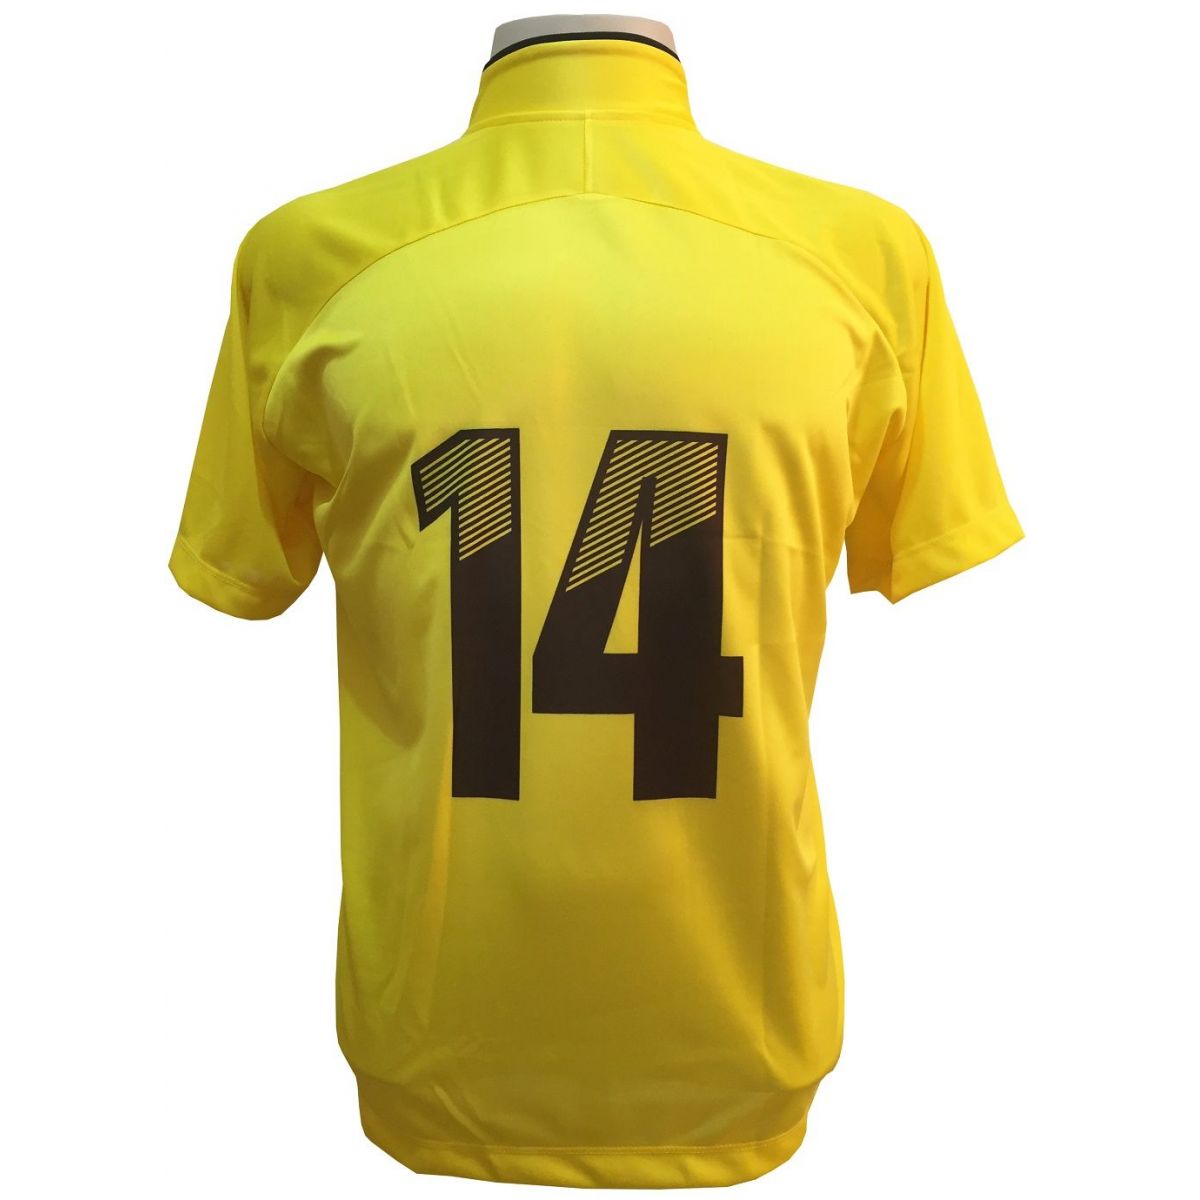 Uniforme Esportivo com 12 camisas modelo City Amarelo/Preto + 12 calções modelo Madrid + 1 Goleiro + Brindes